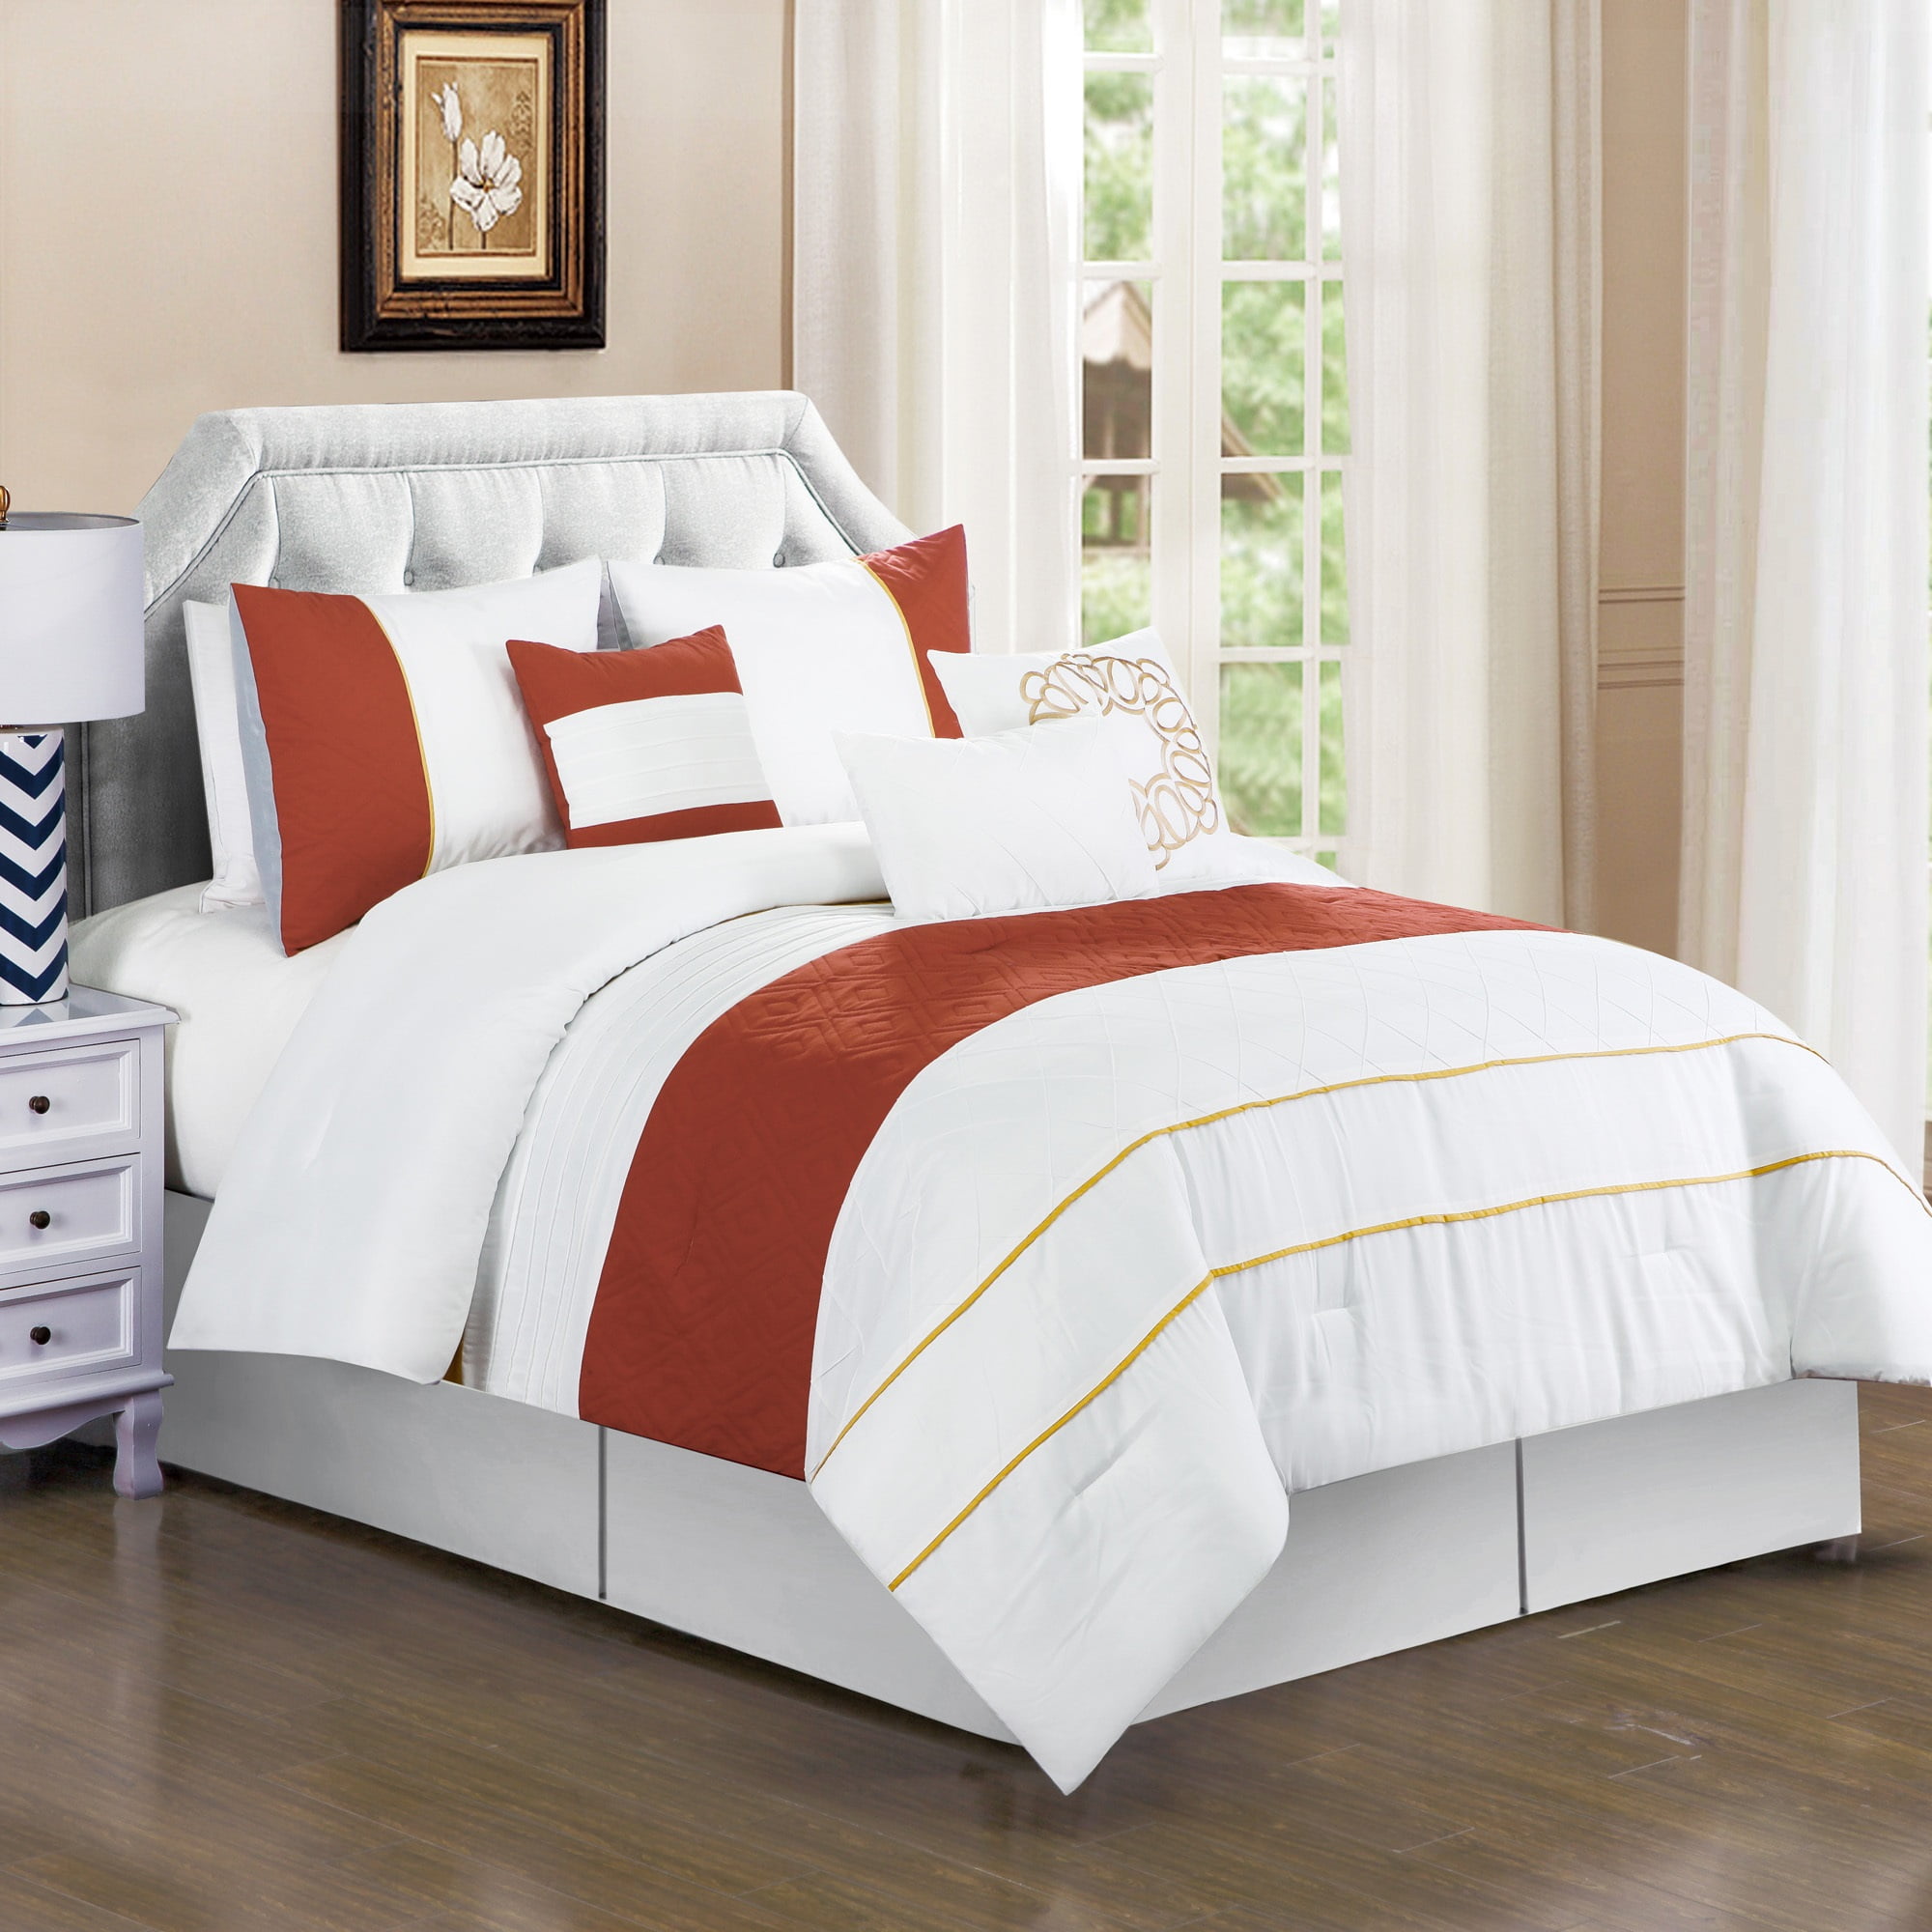 HGMart Bedding Comforter Set Bed In A Bag - 7 Piece Luxury Microfiber